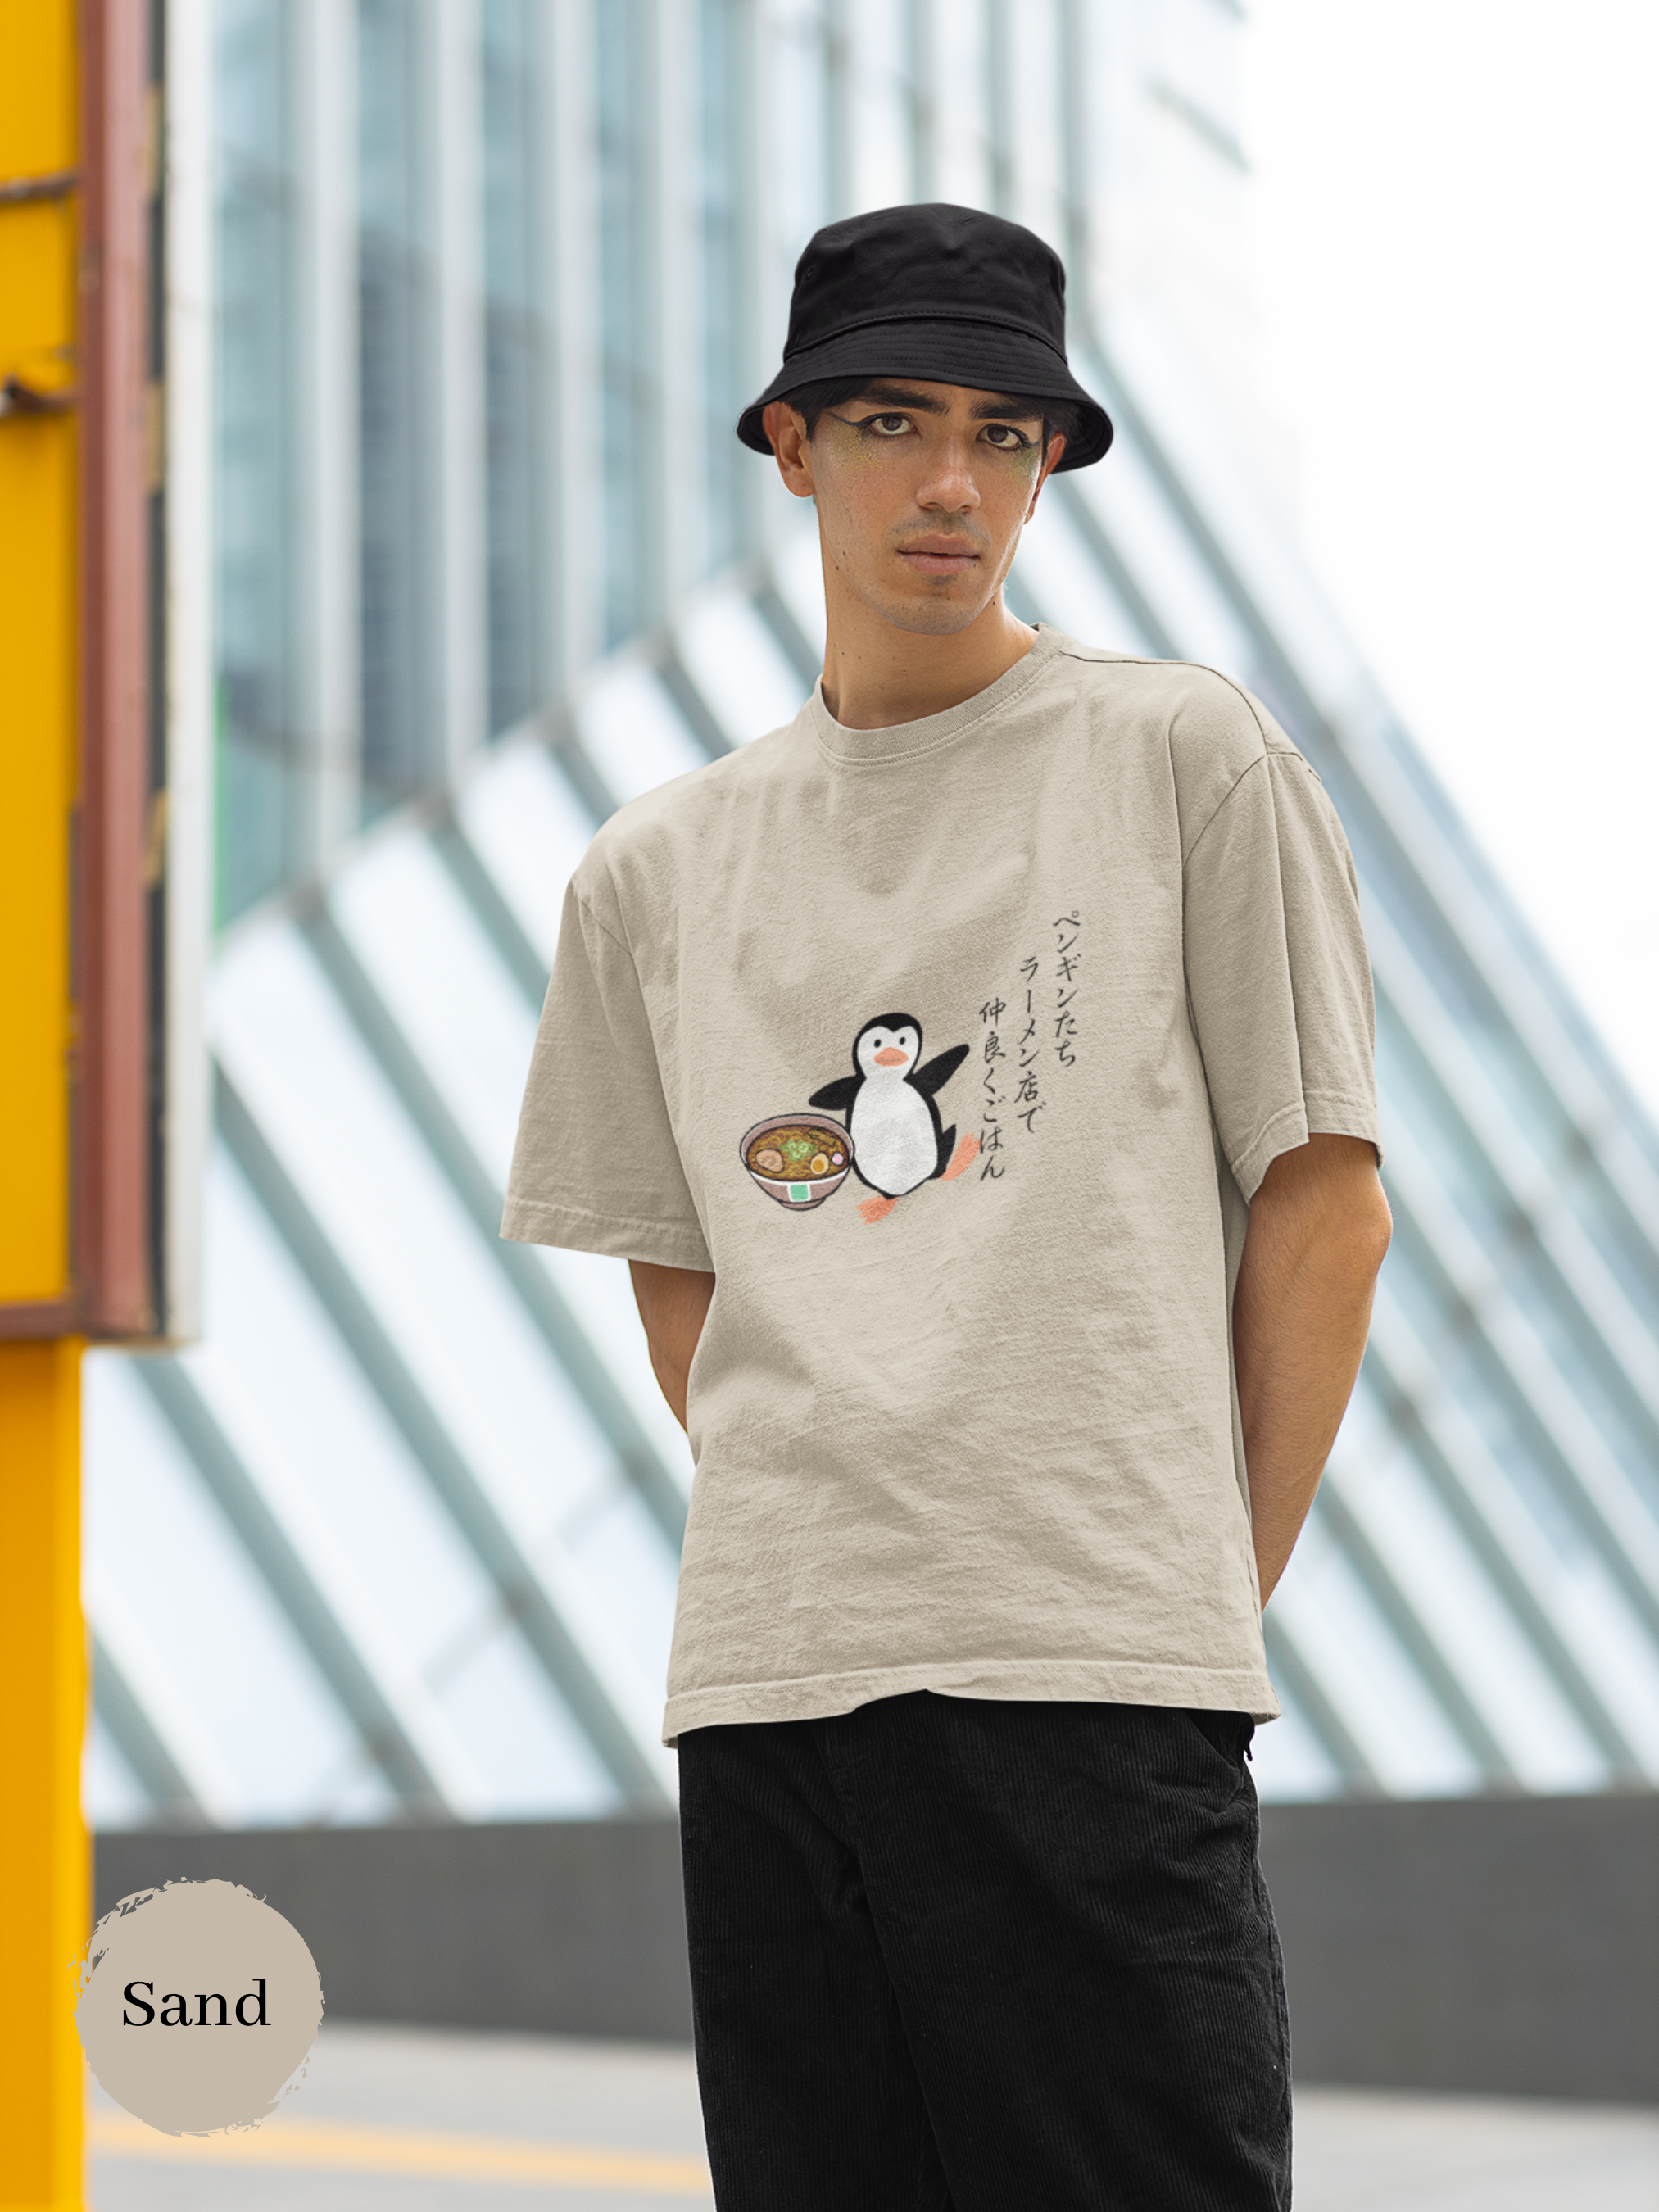 Ramen T-Shirt with Haiku Art: Penguin Friends Dining Together at Japanese Ramen Shop Japanese Asian Text Tee